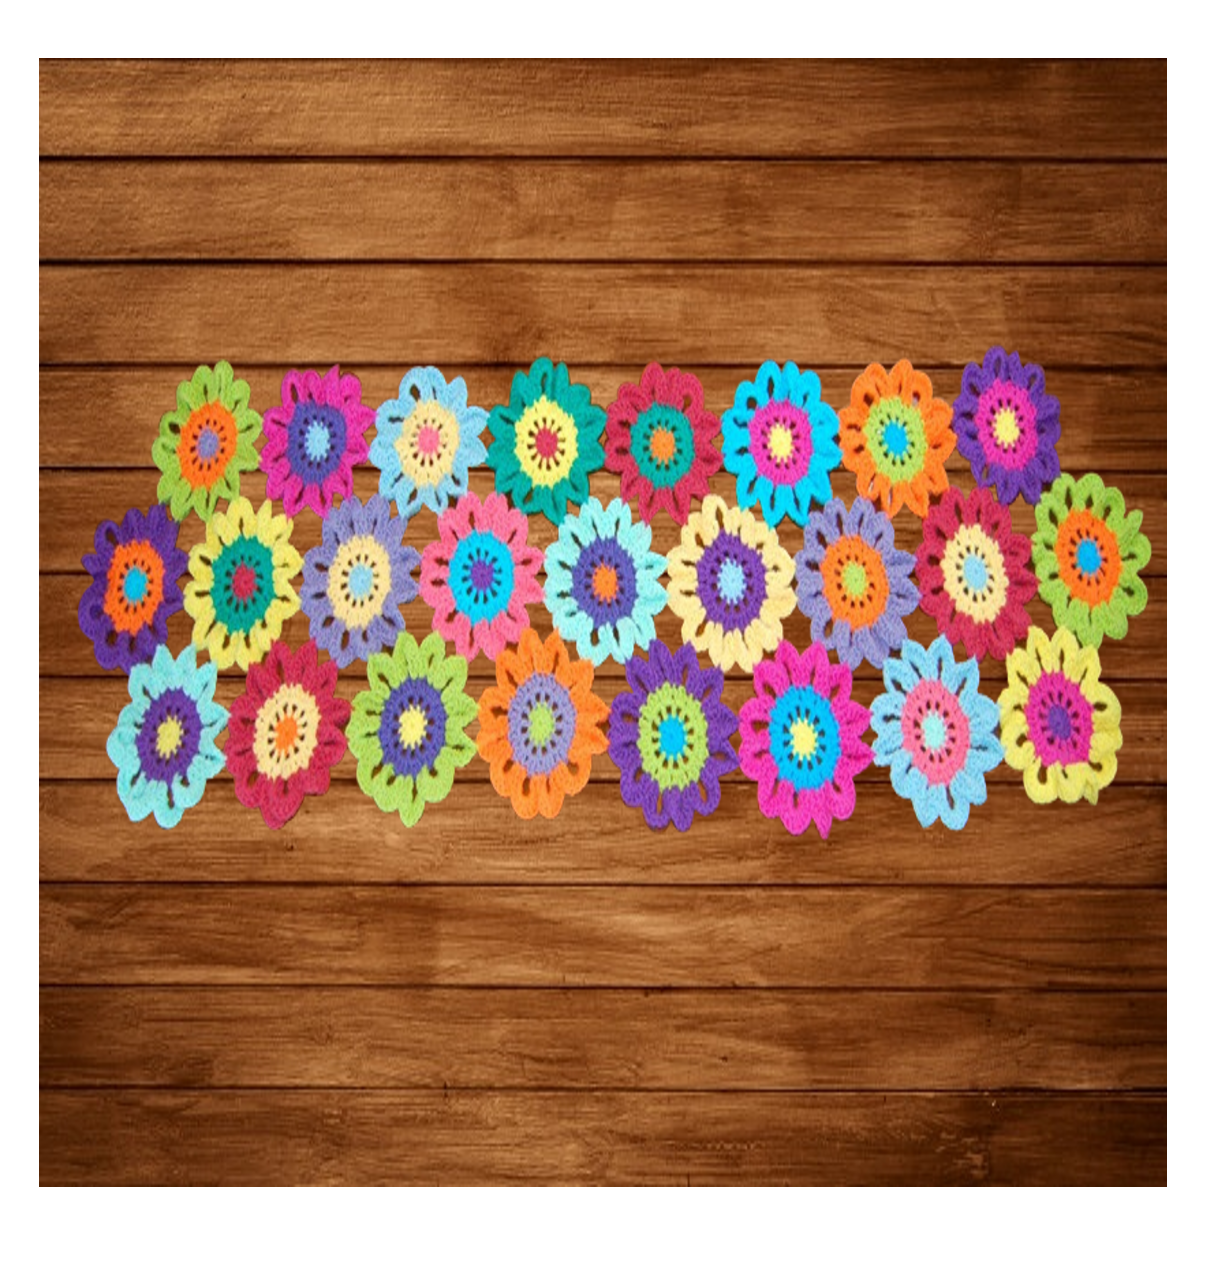 Colorful Crocheted Flower Table Runner - Shiroli - Image 3